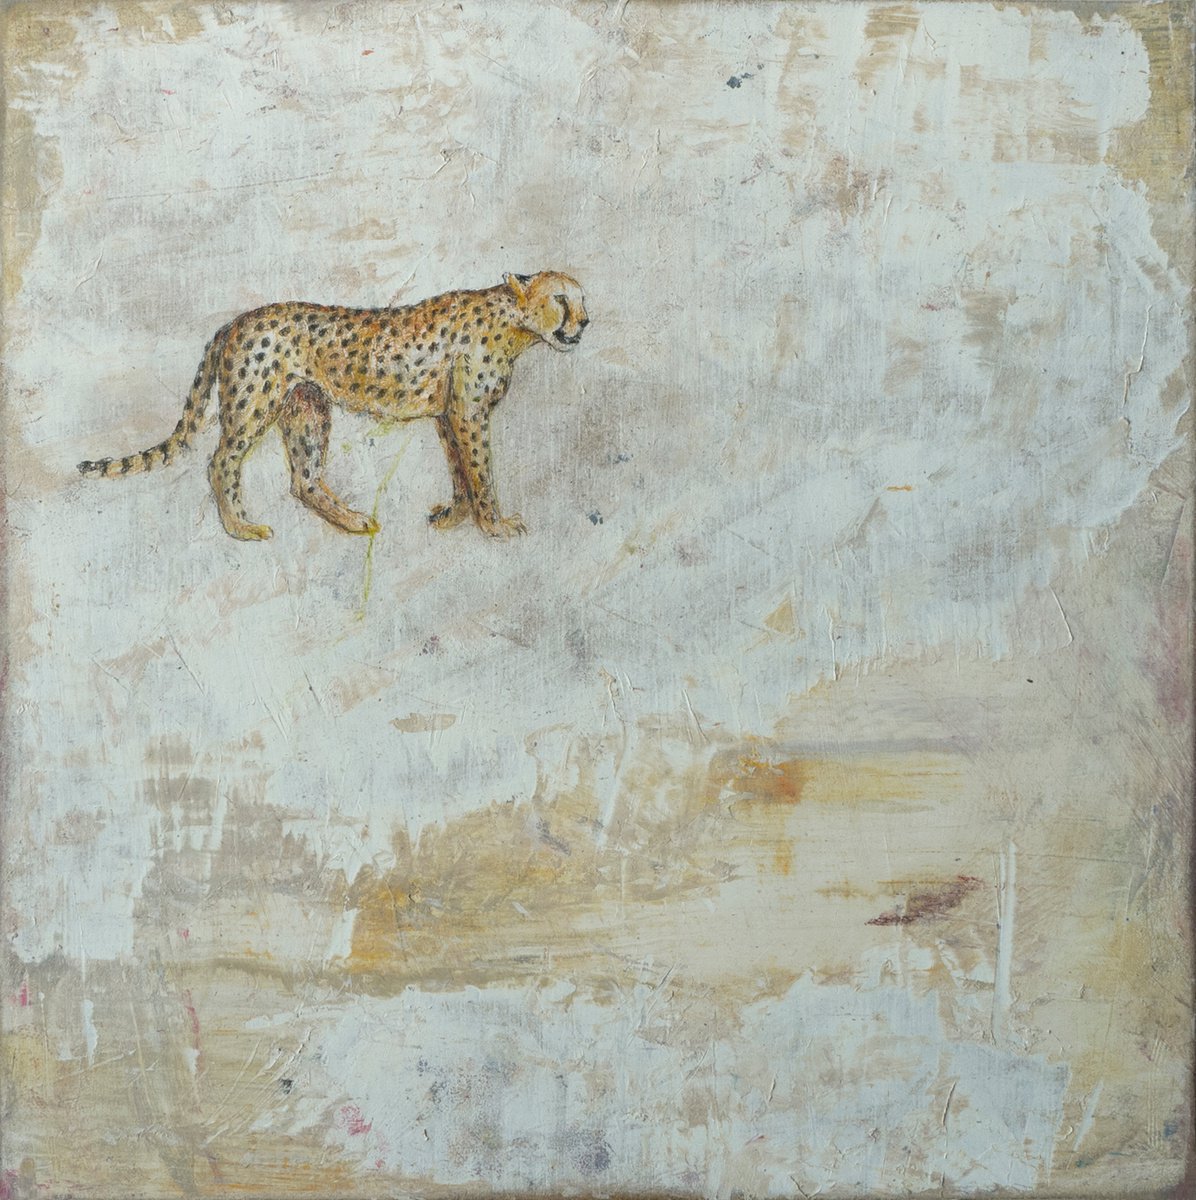 A Cheetah by Lisa Braun